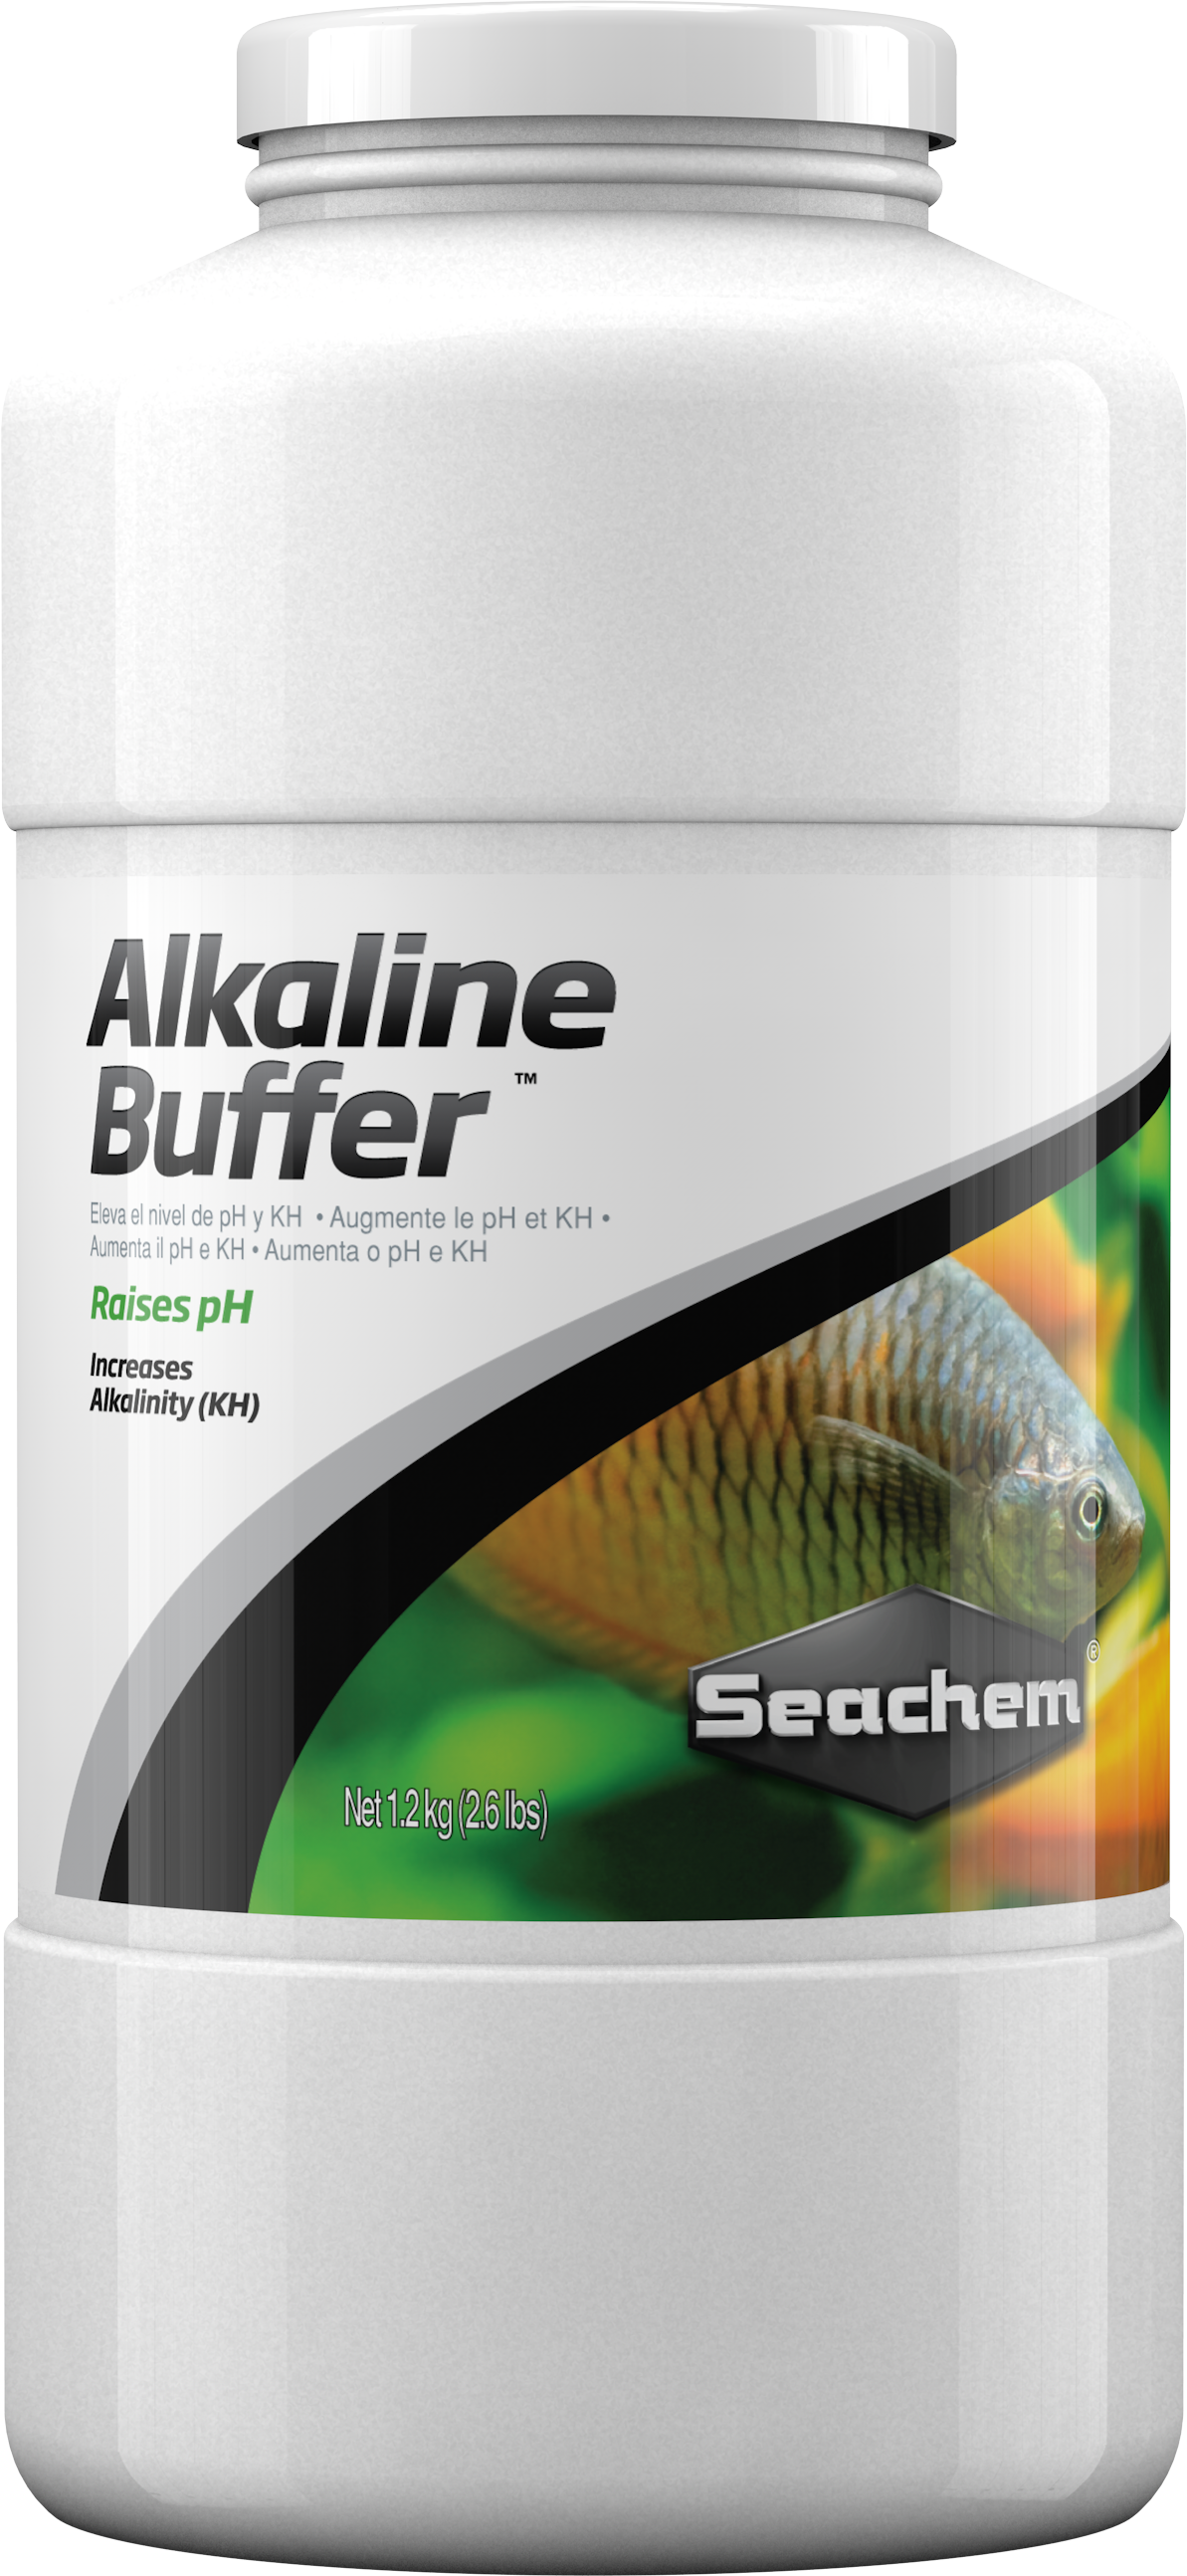 Seachem Alkaline Buffer (1.2 kg)